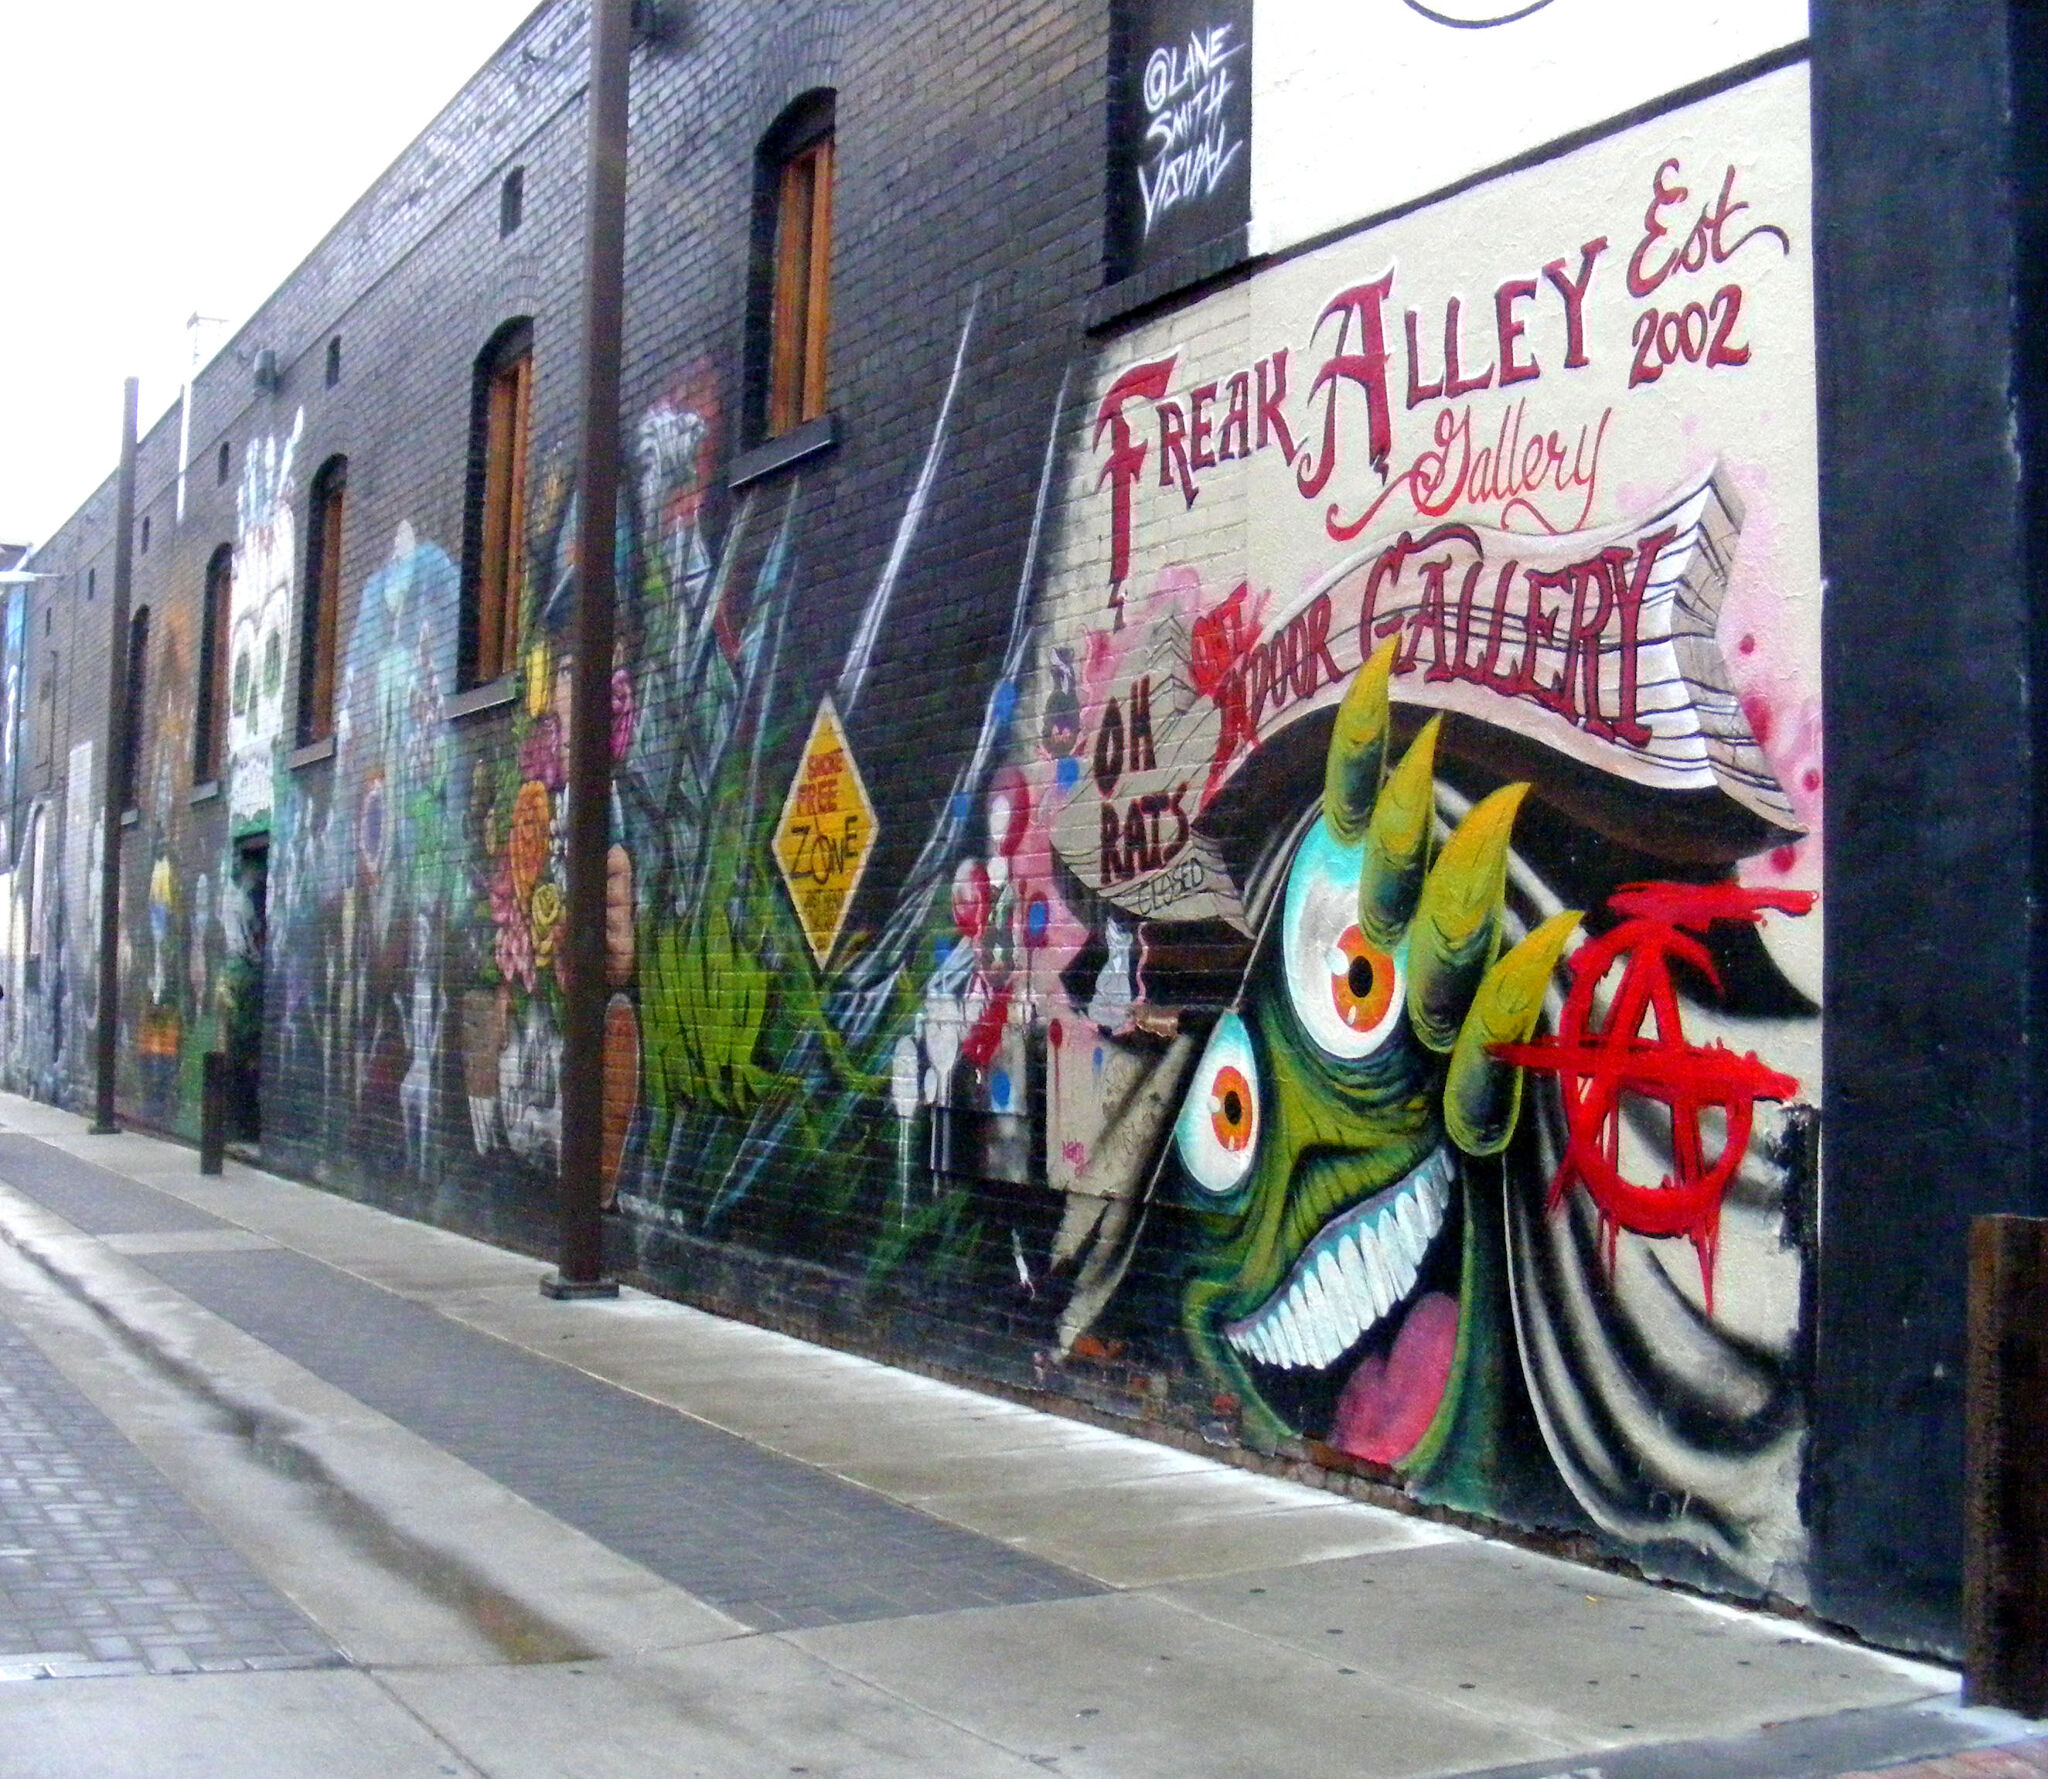 &mdash;Freak Alley Art Gallery